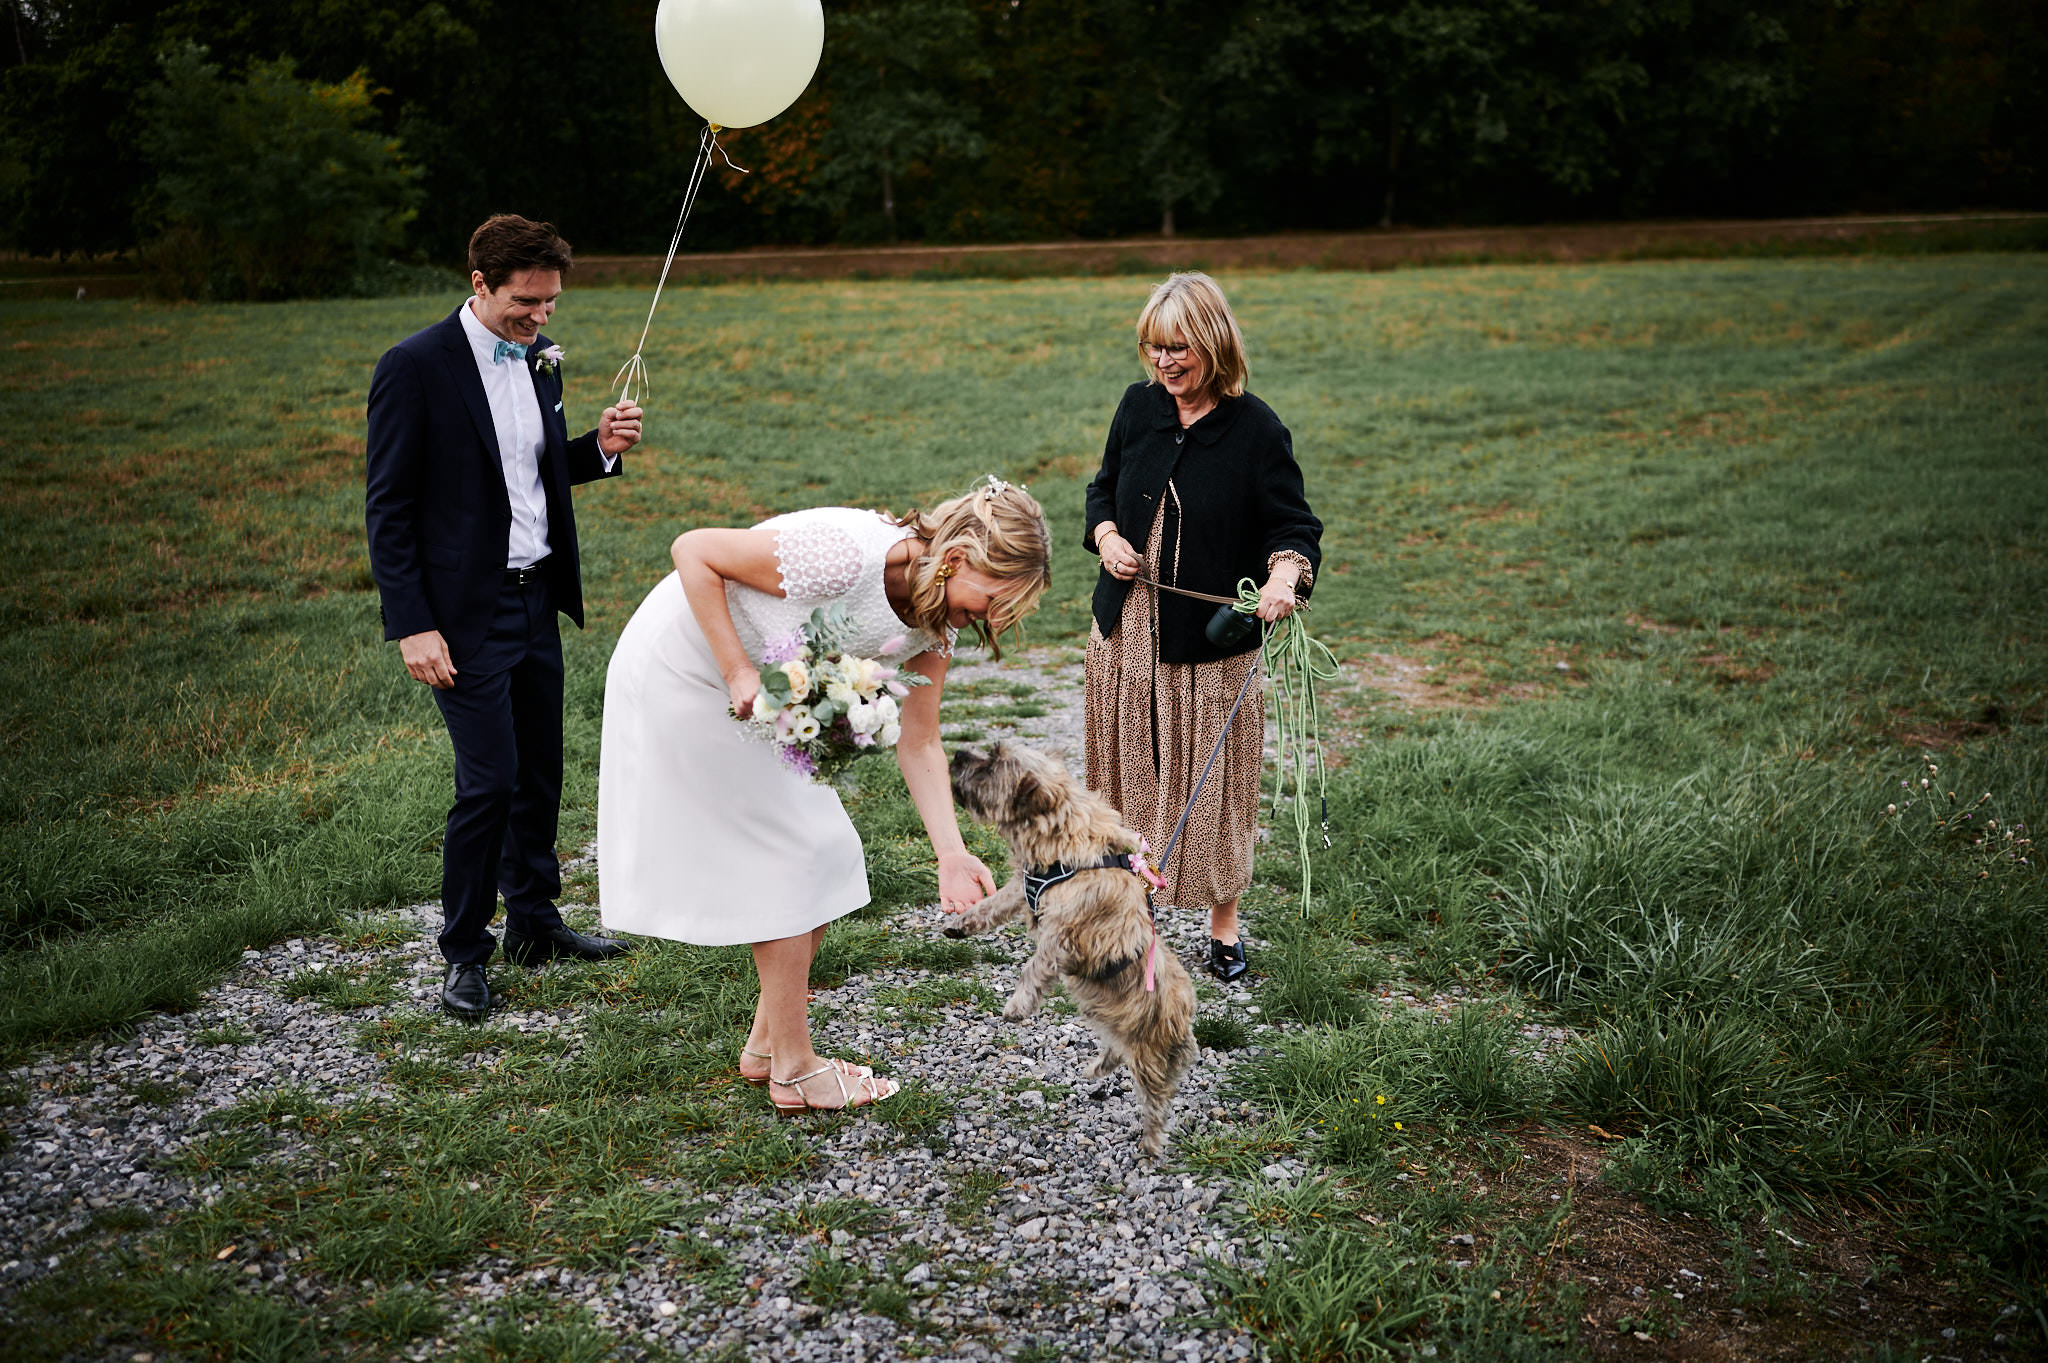 Braut streichelt einen Hund an der Leine, der von einer älteren Frau gehalten wird, daneben steht ein lächelnder Mann mit einem Luftballon im Freien auf dem Rasengelände von Schloss Wissen.